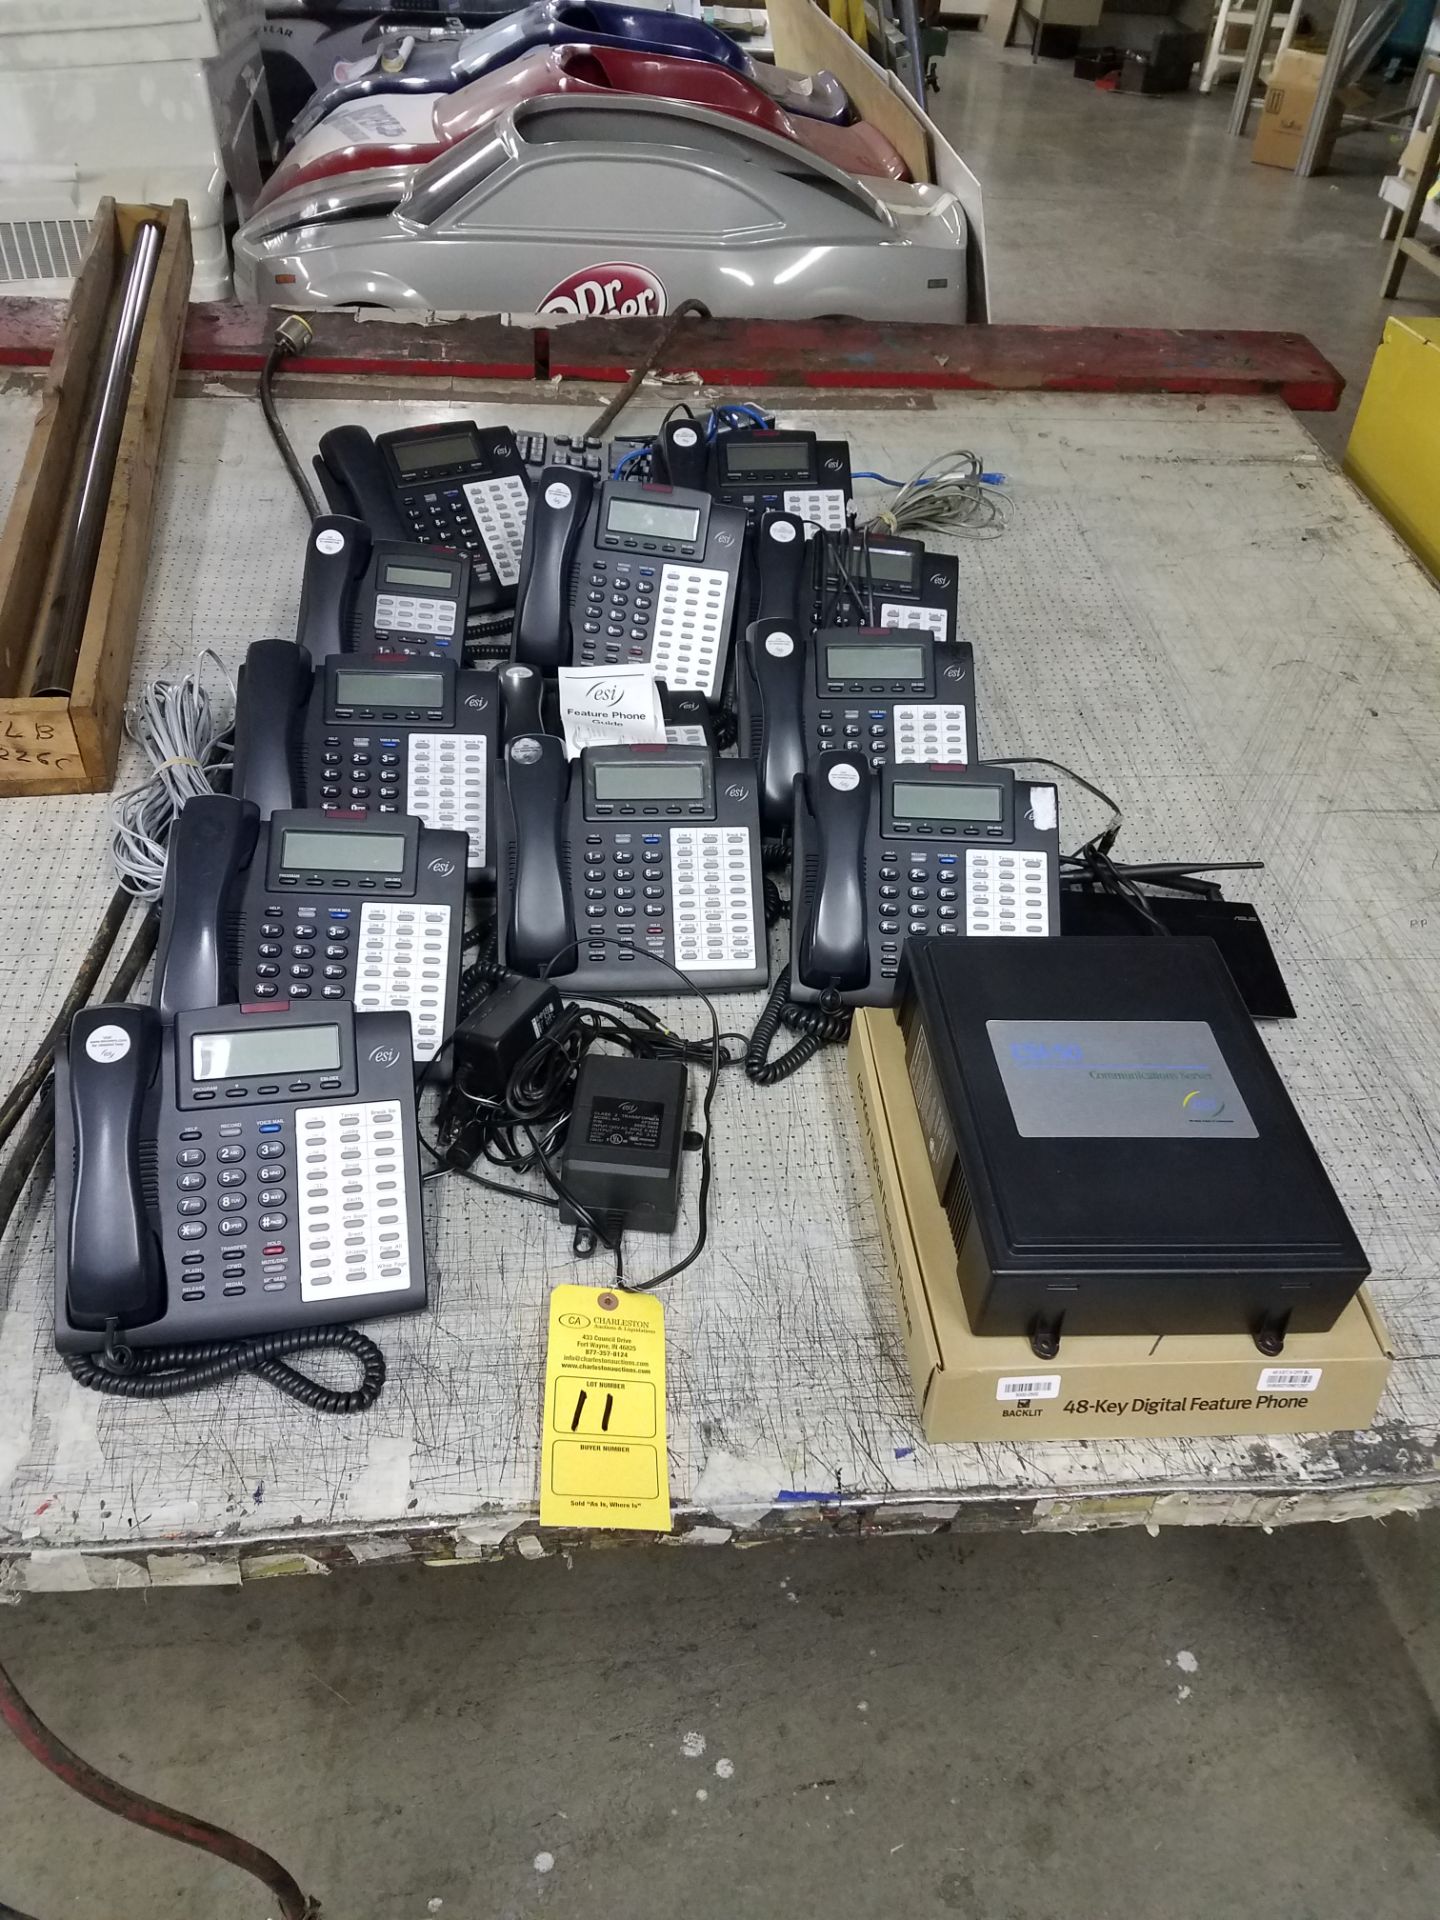 (11) ESI PHONES (1) ESI COMMUNICATION SERVER MODEL-ESI-50 (1) ASUS WIRELESS ROUTER MODEL-RT-N12